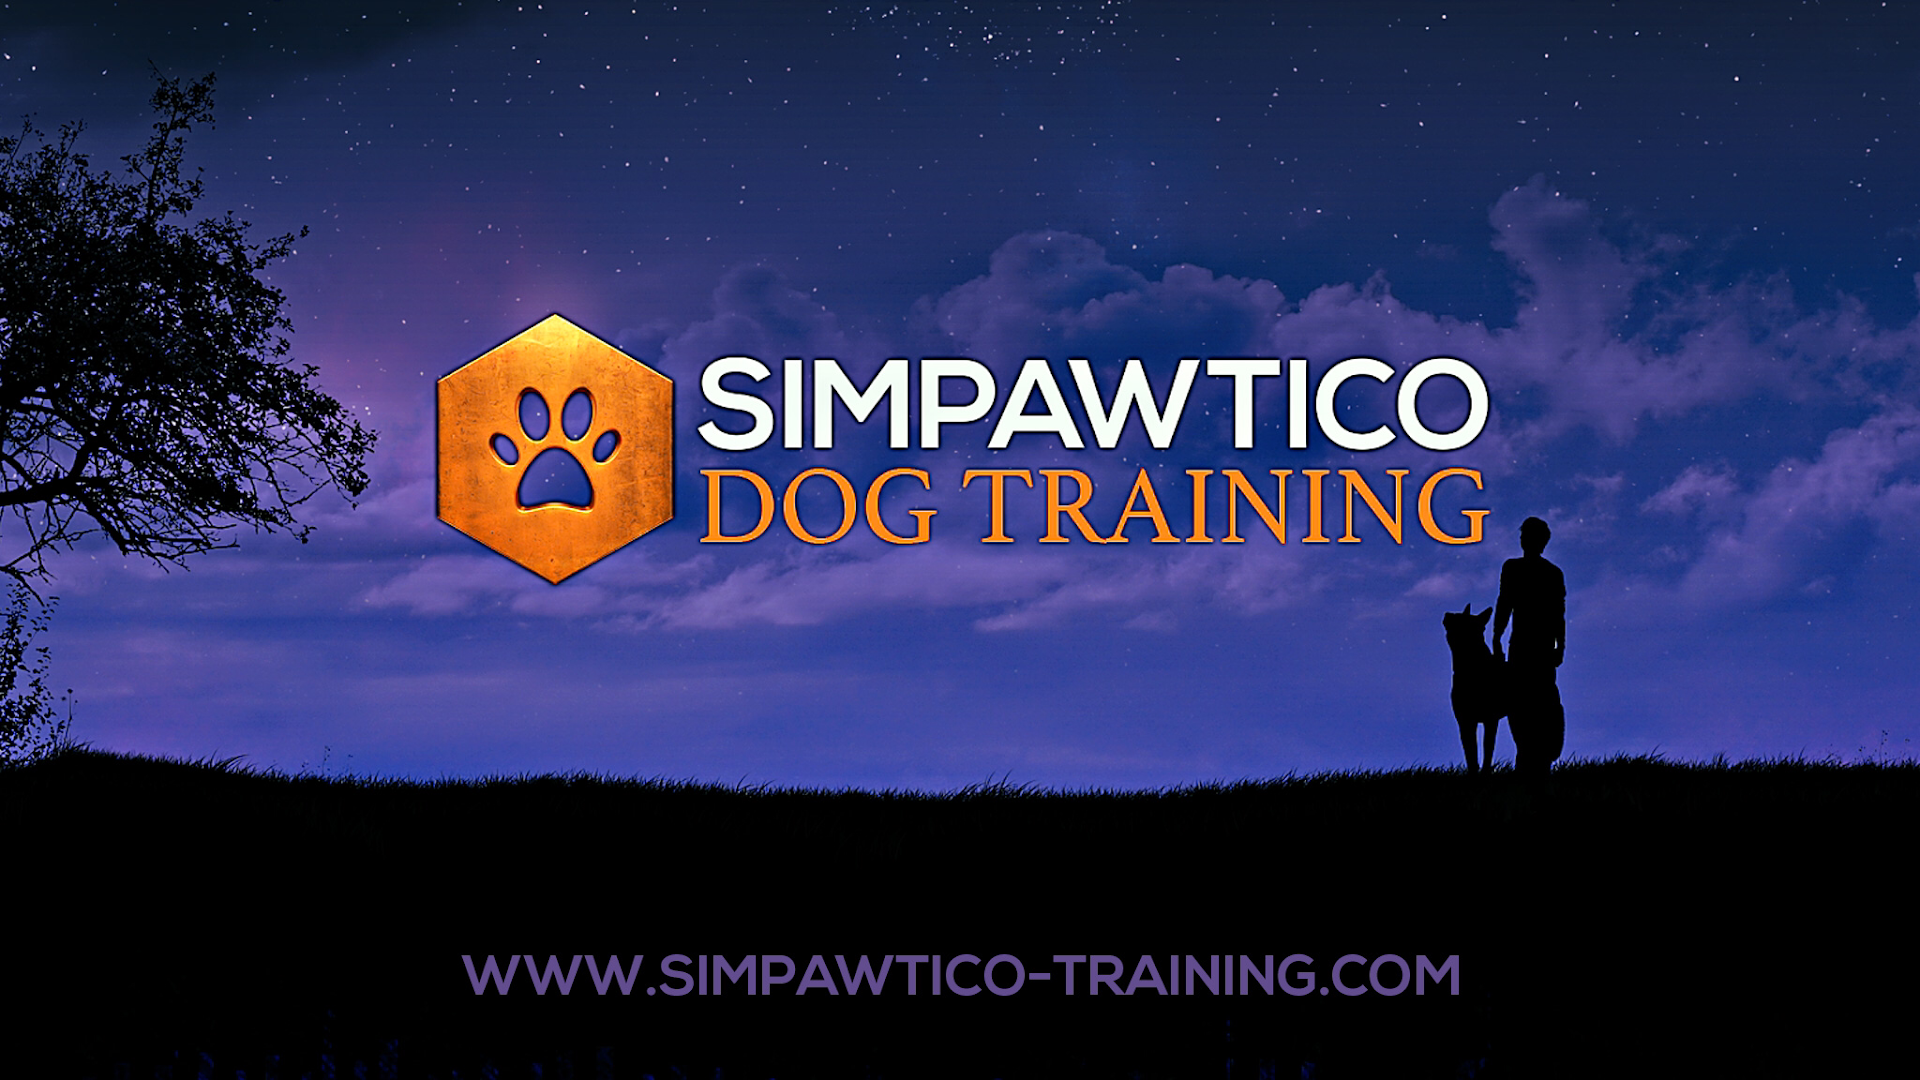 Simpawtico Dog Training